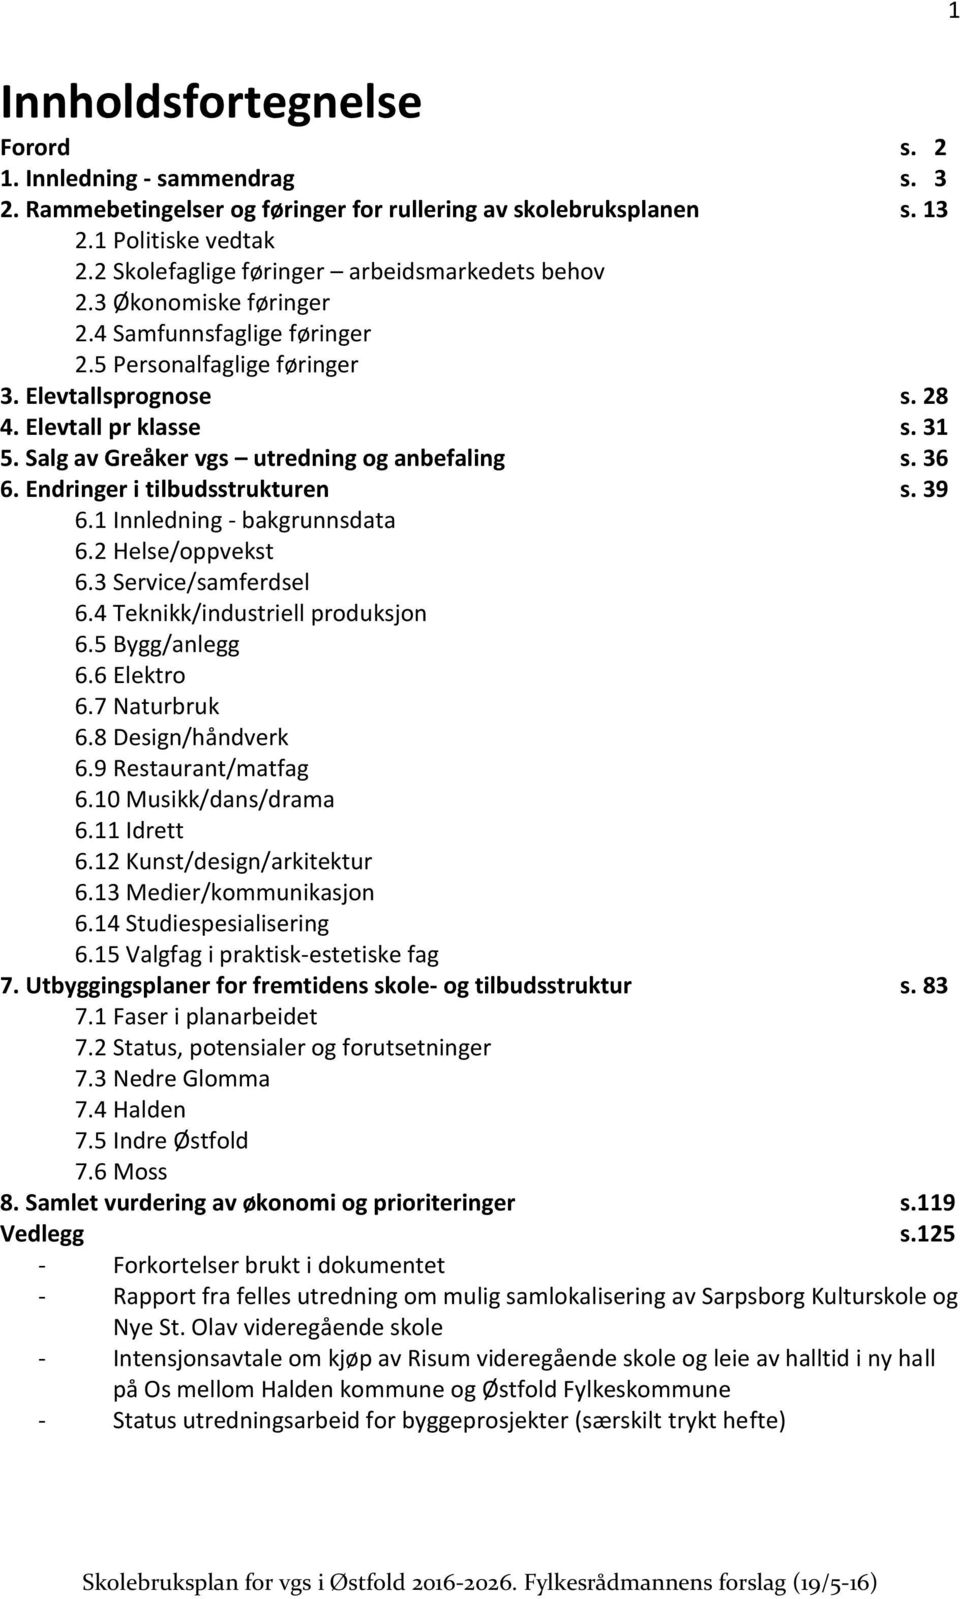 Salg av Greåker vgs utredning og anbefaling s. 36 6. Endringer i tilbudsstrukturen s. 39 6.1 Innledning - bakgrunnsdata 6.2 Helse/oppvekst 6.3 Service/samferdsel 6.4 Teknikk/industriell produksjon 6.